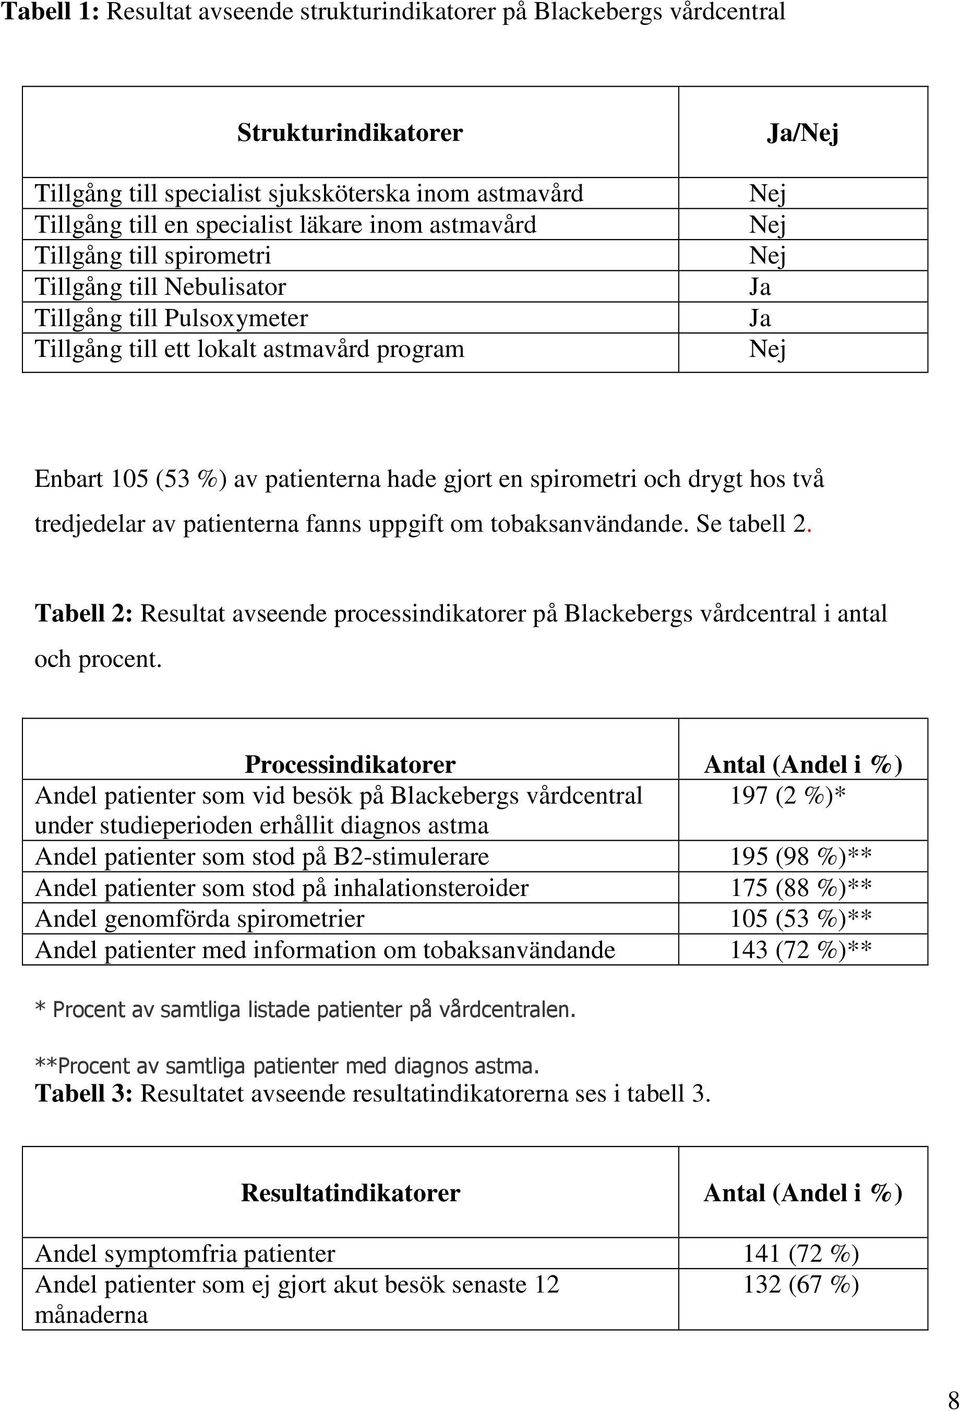 spirometri och drygt hos två tredjedelar av patienterna fanns uppgift om tobaksanvändande. Se tabell 2. Tabell 2: Resultat avseende processindikatorer på Blackebergs vårdcentral i antal och procent.